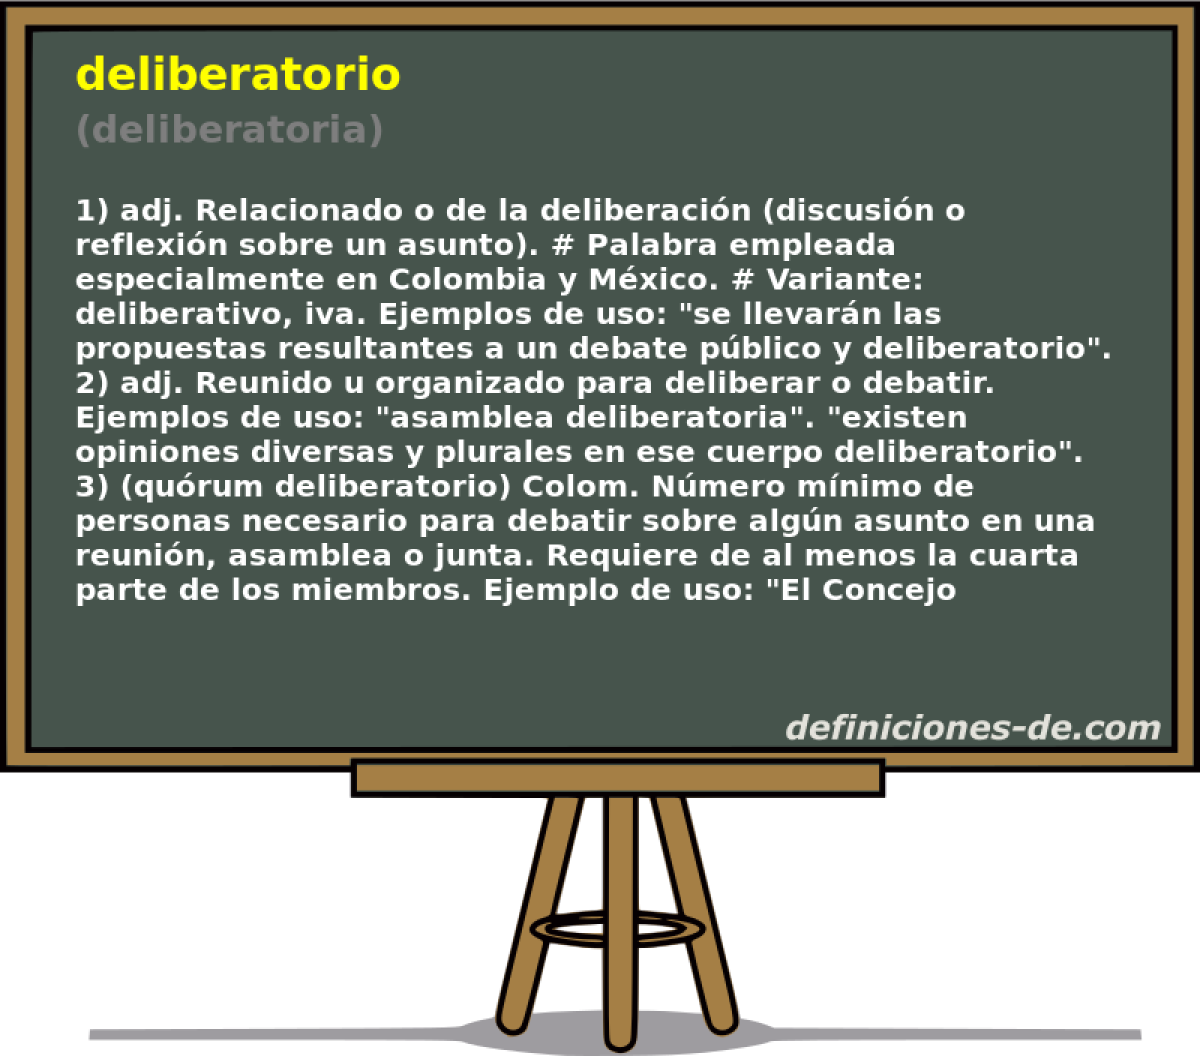 deliberatorio (deliberatoria)